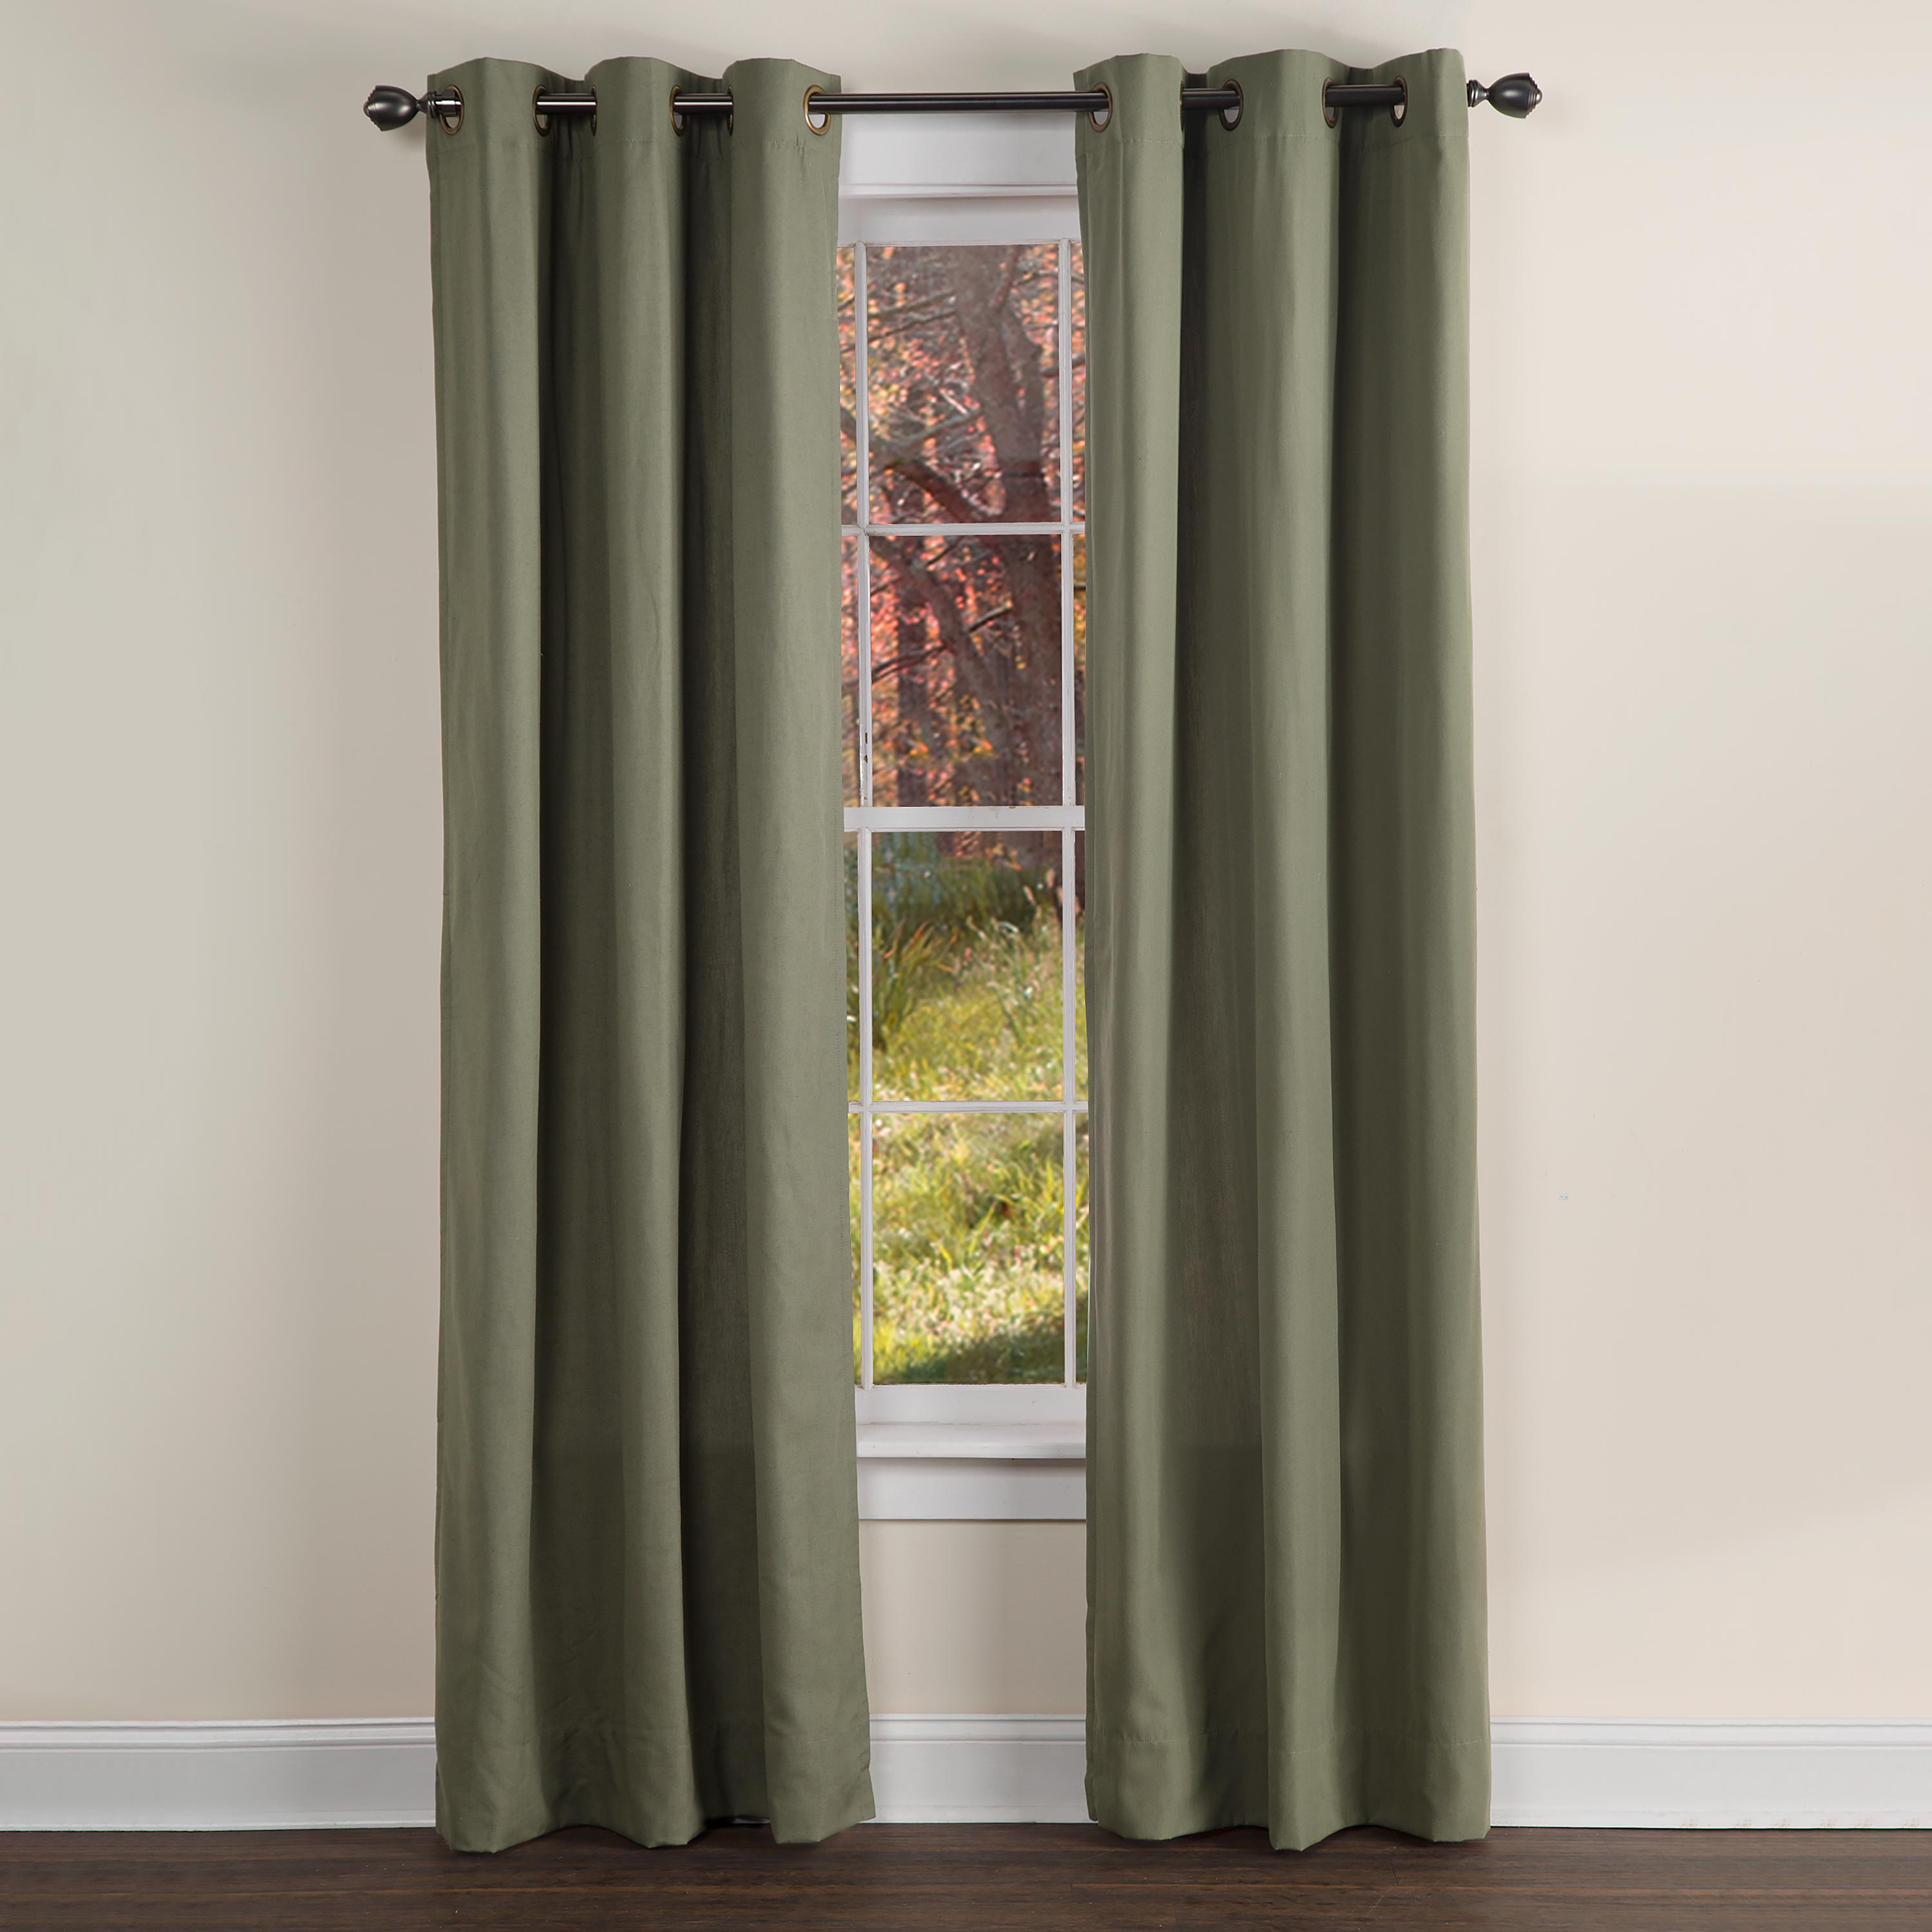 Homespun Grommet-Top Insulated Curtain, 84"L - Moss